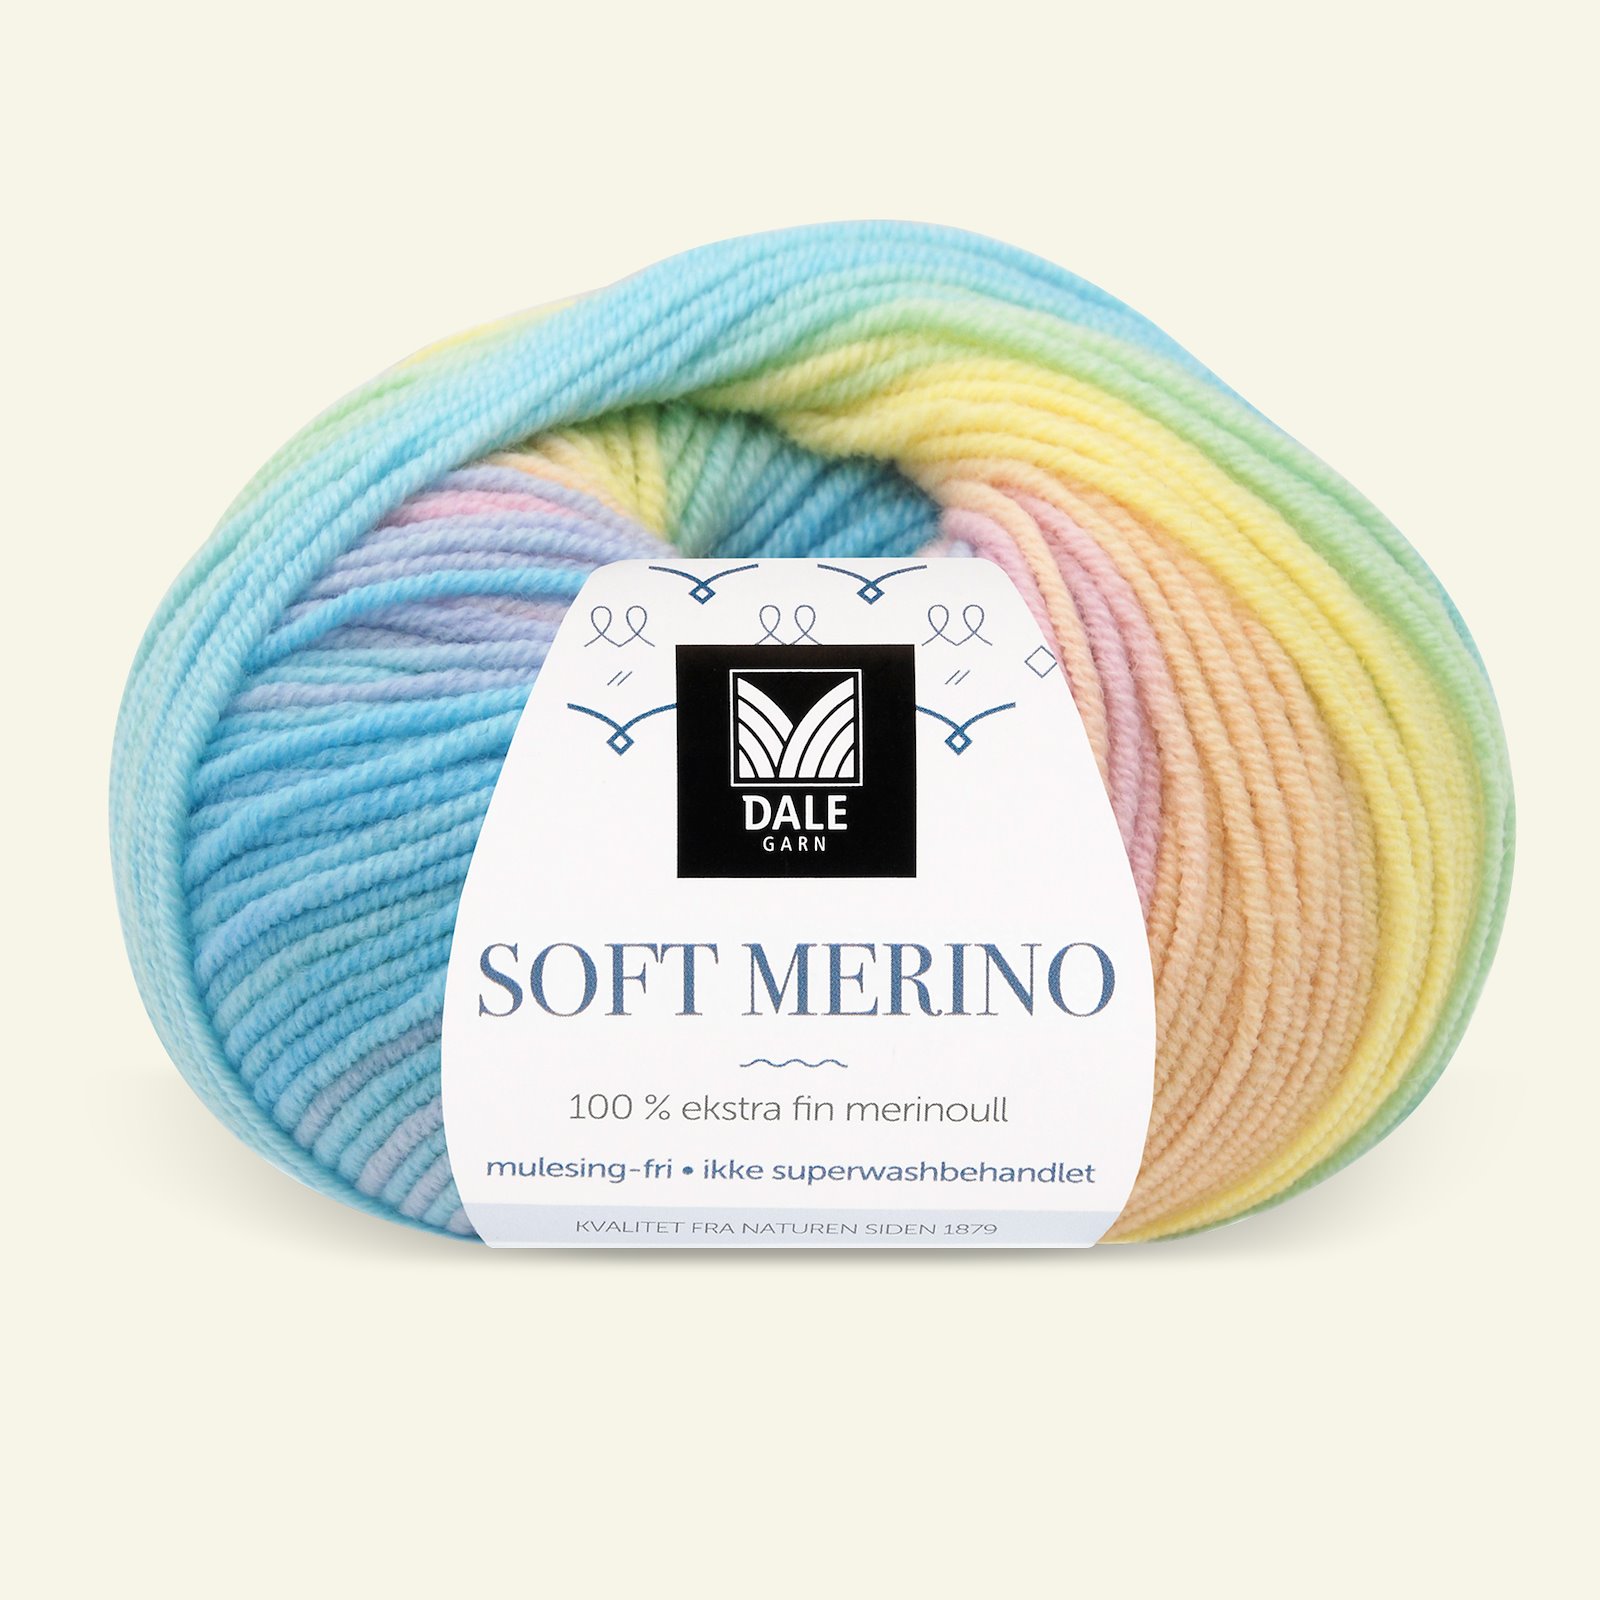 Dale Garn, 100% Extrafeine Merino-Wolle "Soft Merino", pastel printed 90001221_pack